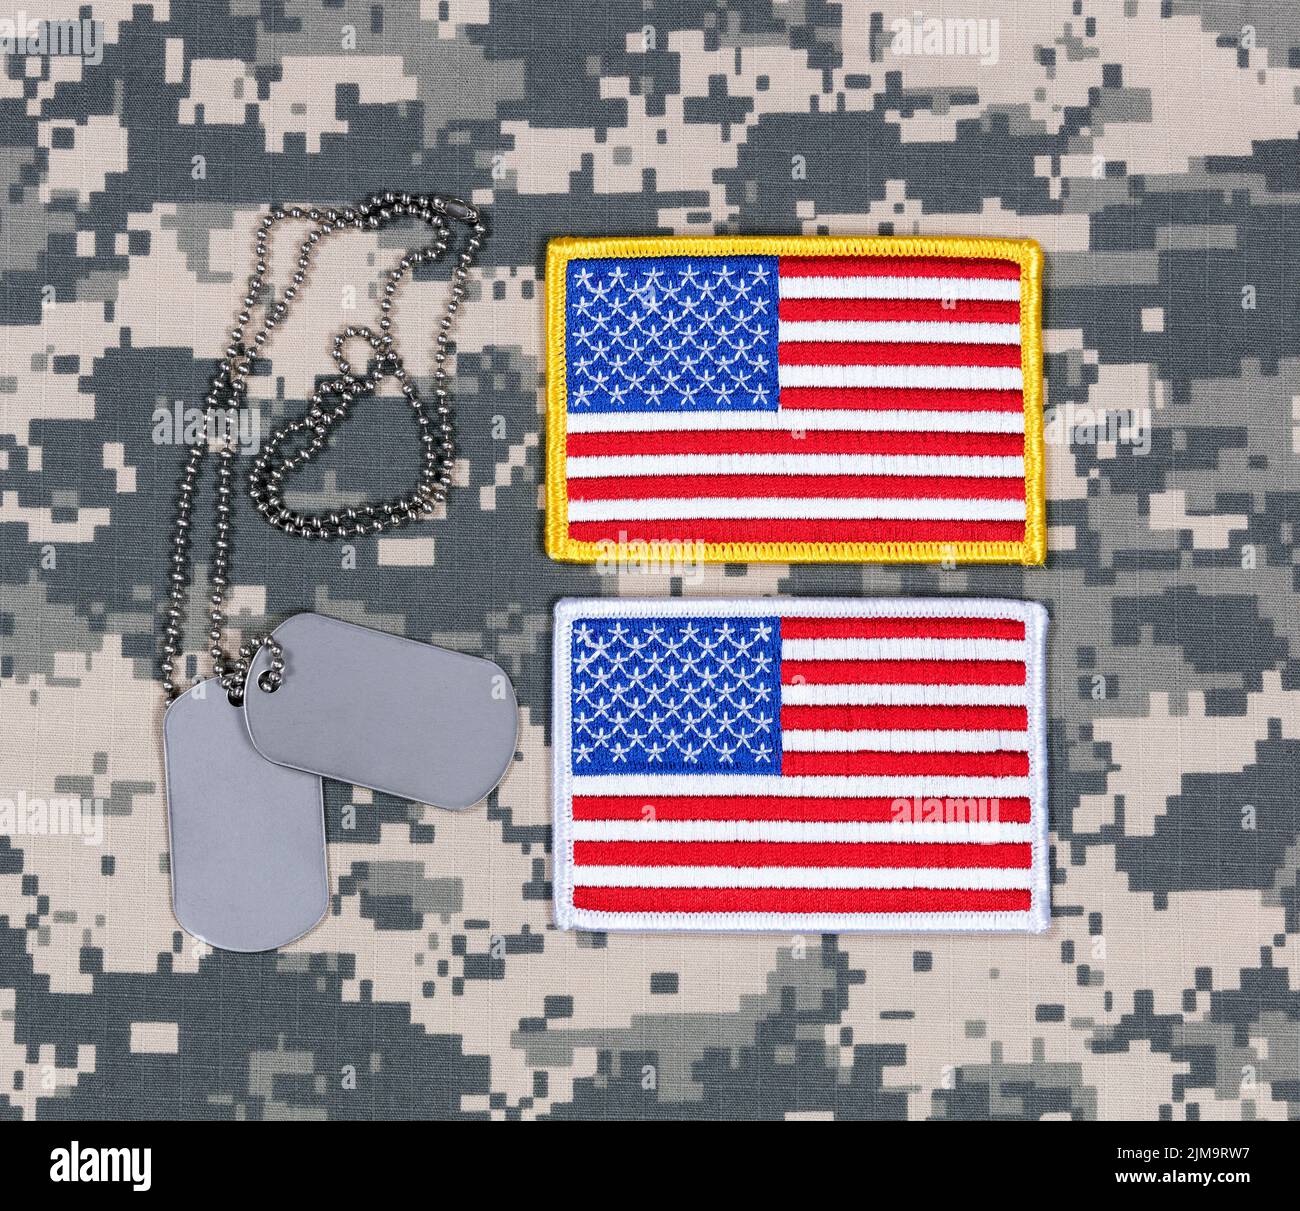 Petits patches de drapeau américain et étiquettes d'identification sur l'uniforme militaire de la tenue de combat Banque D'Images